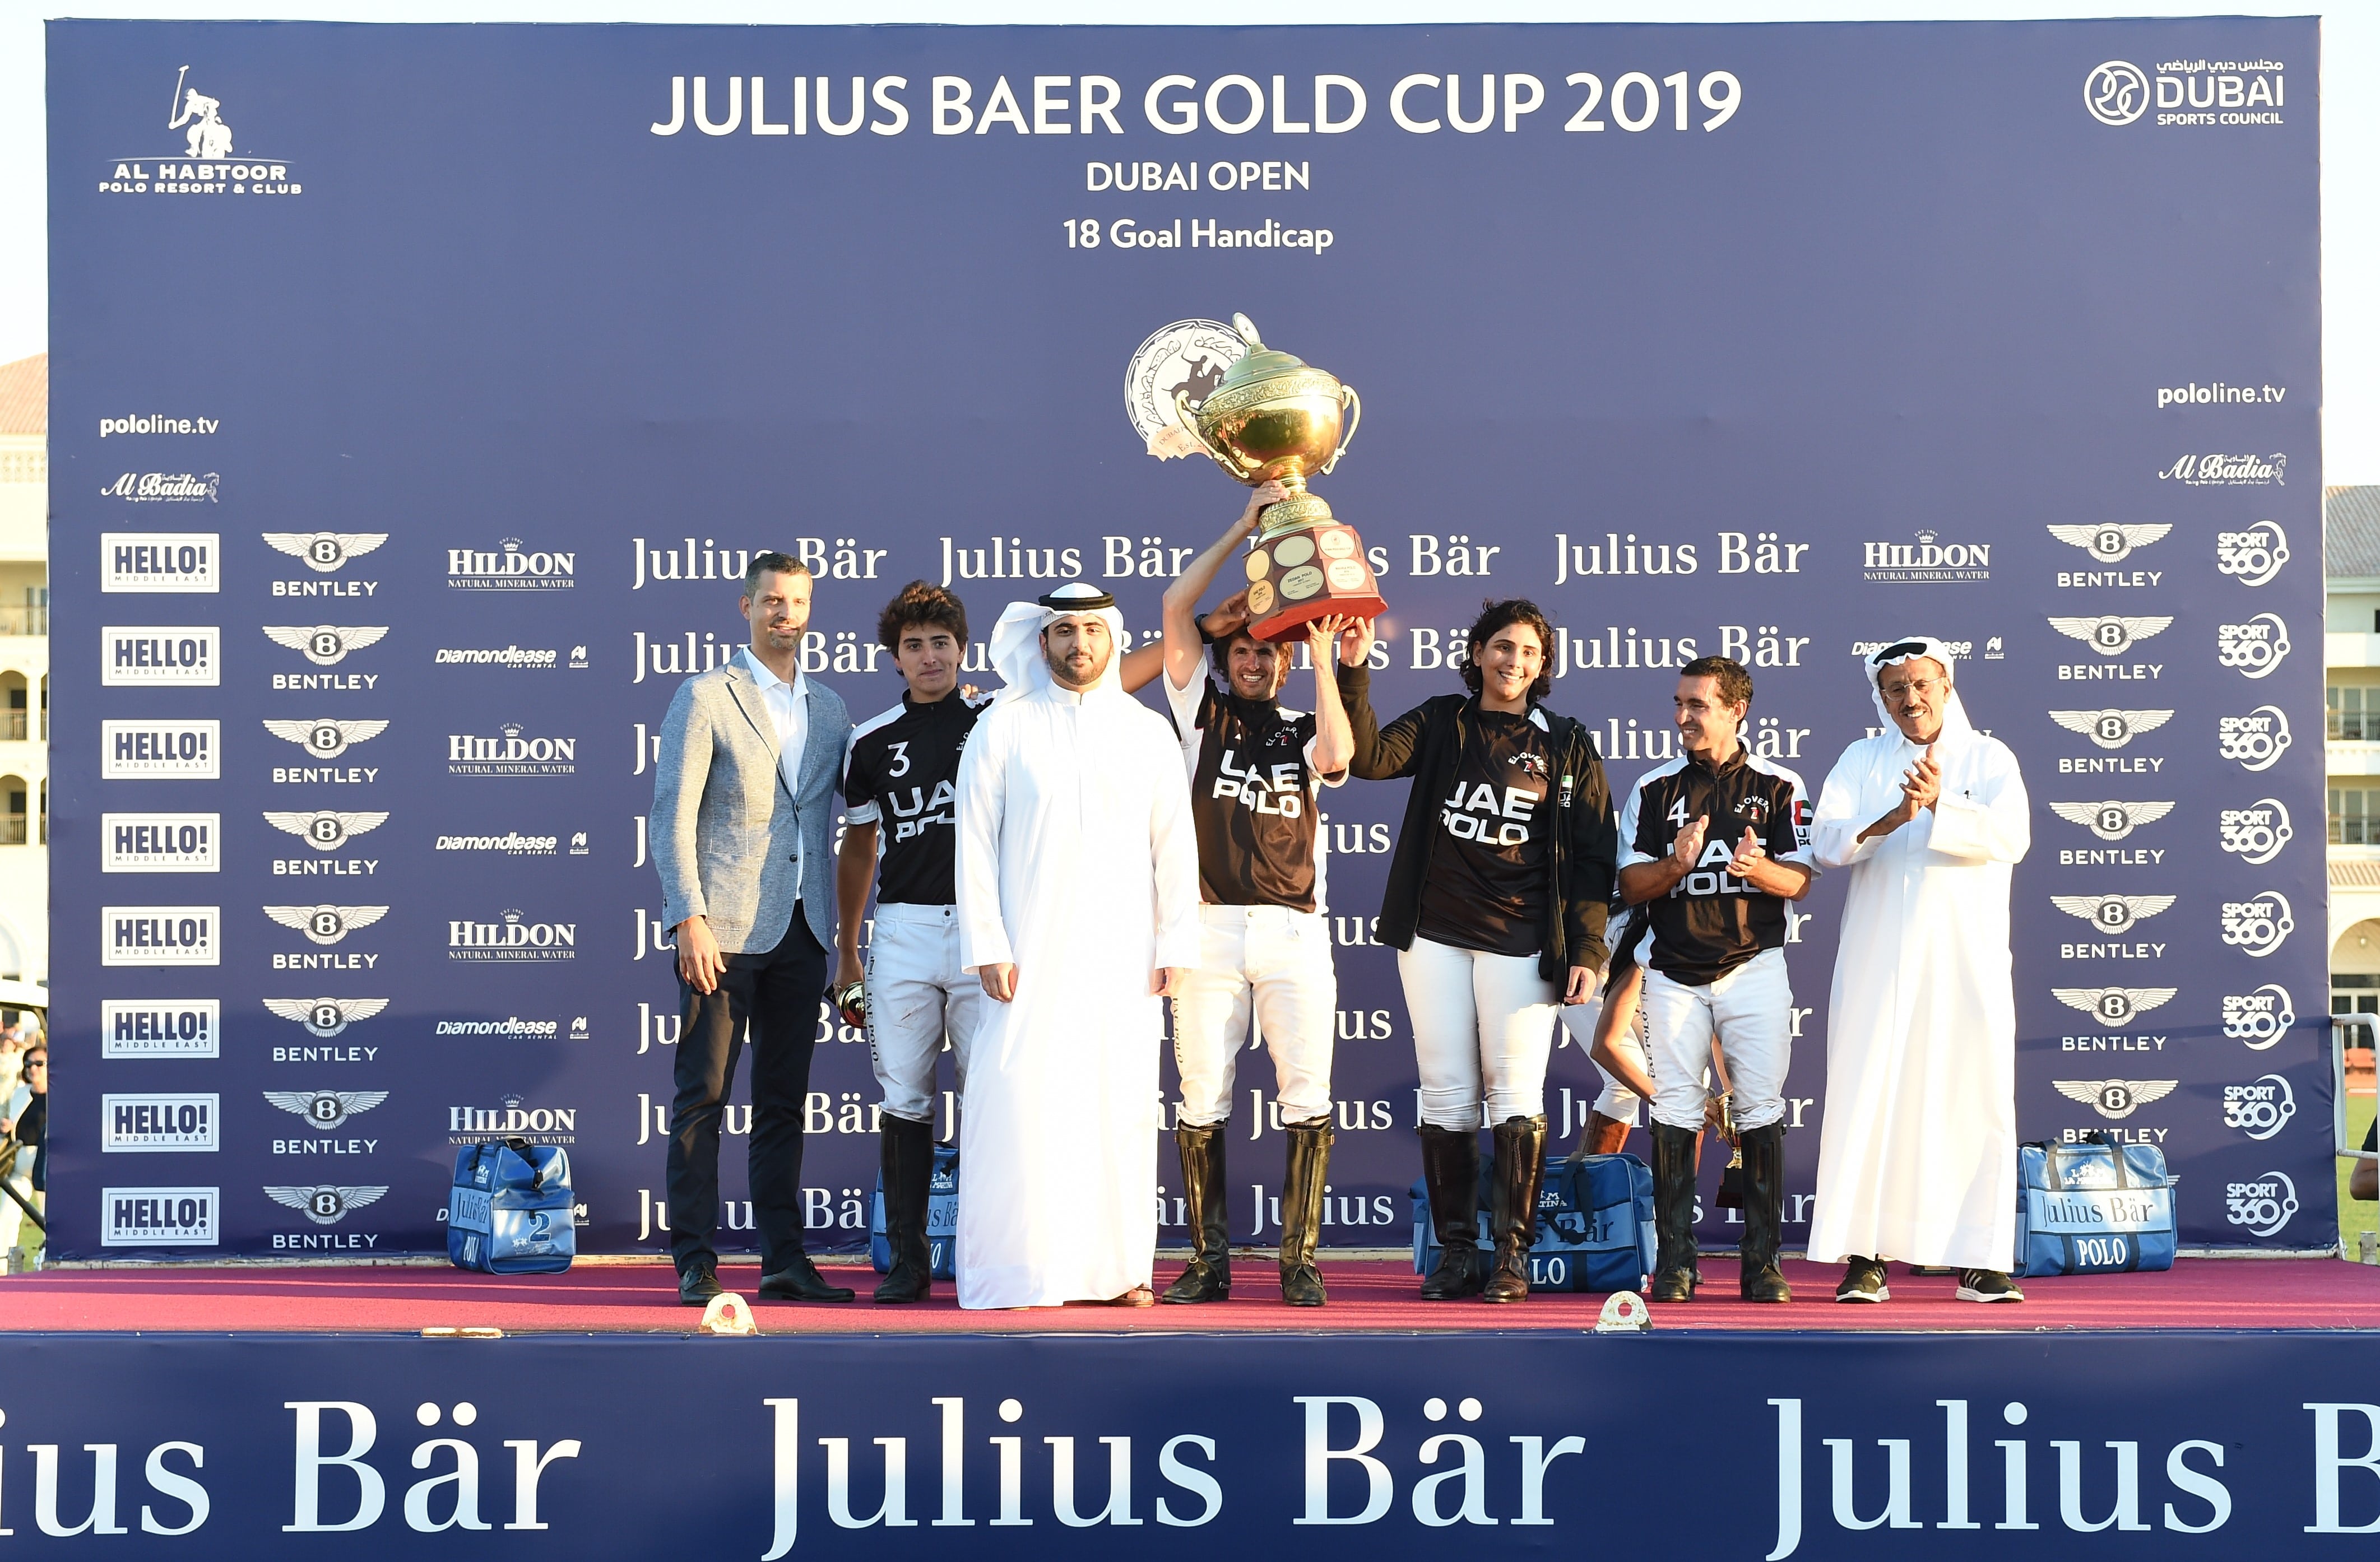 DUBAI-FINAL DE LA JULIUS BAER GOLD CUP